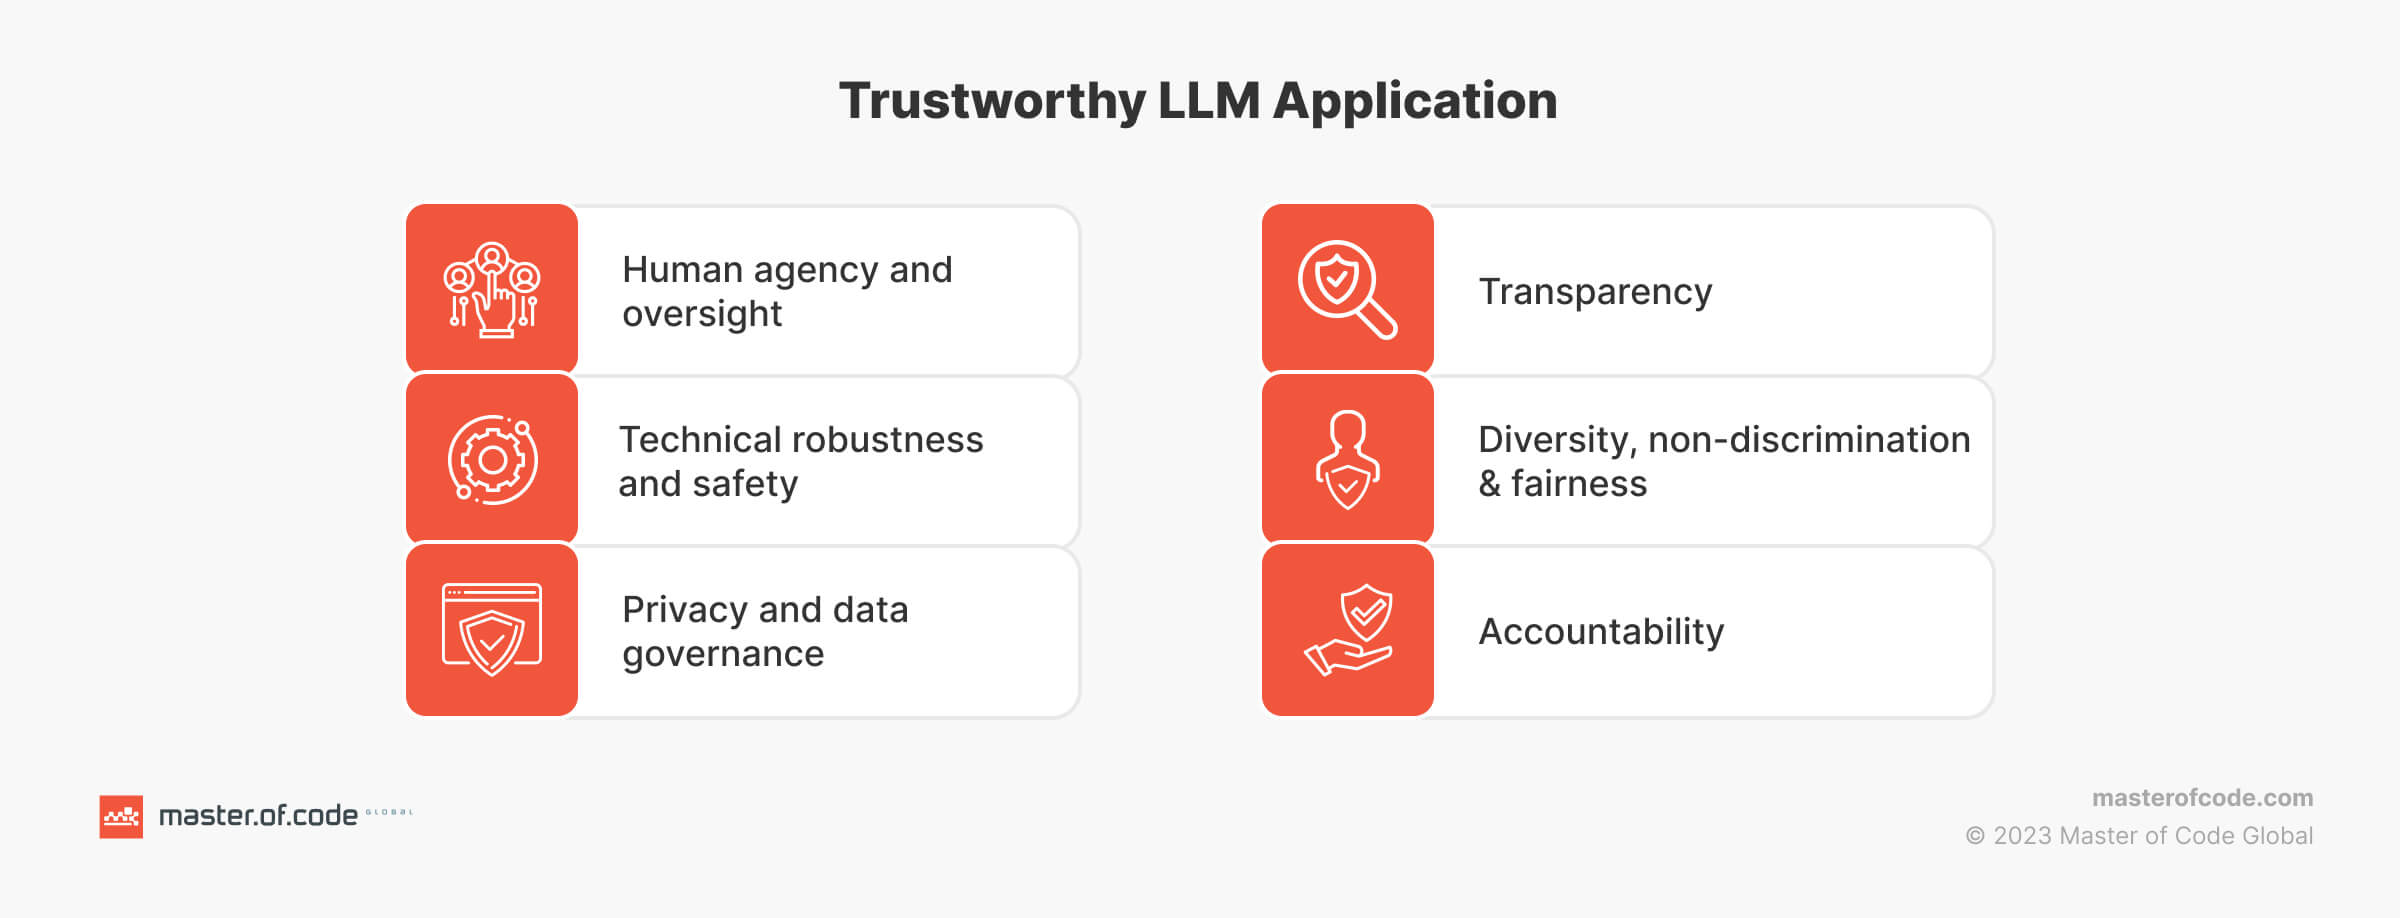 Trustworthy LLM Application